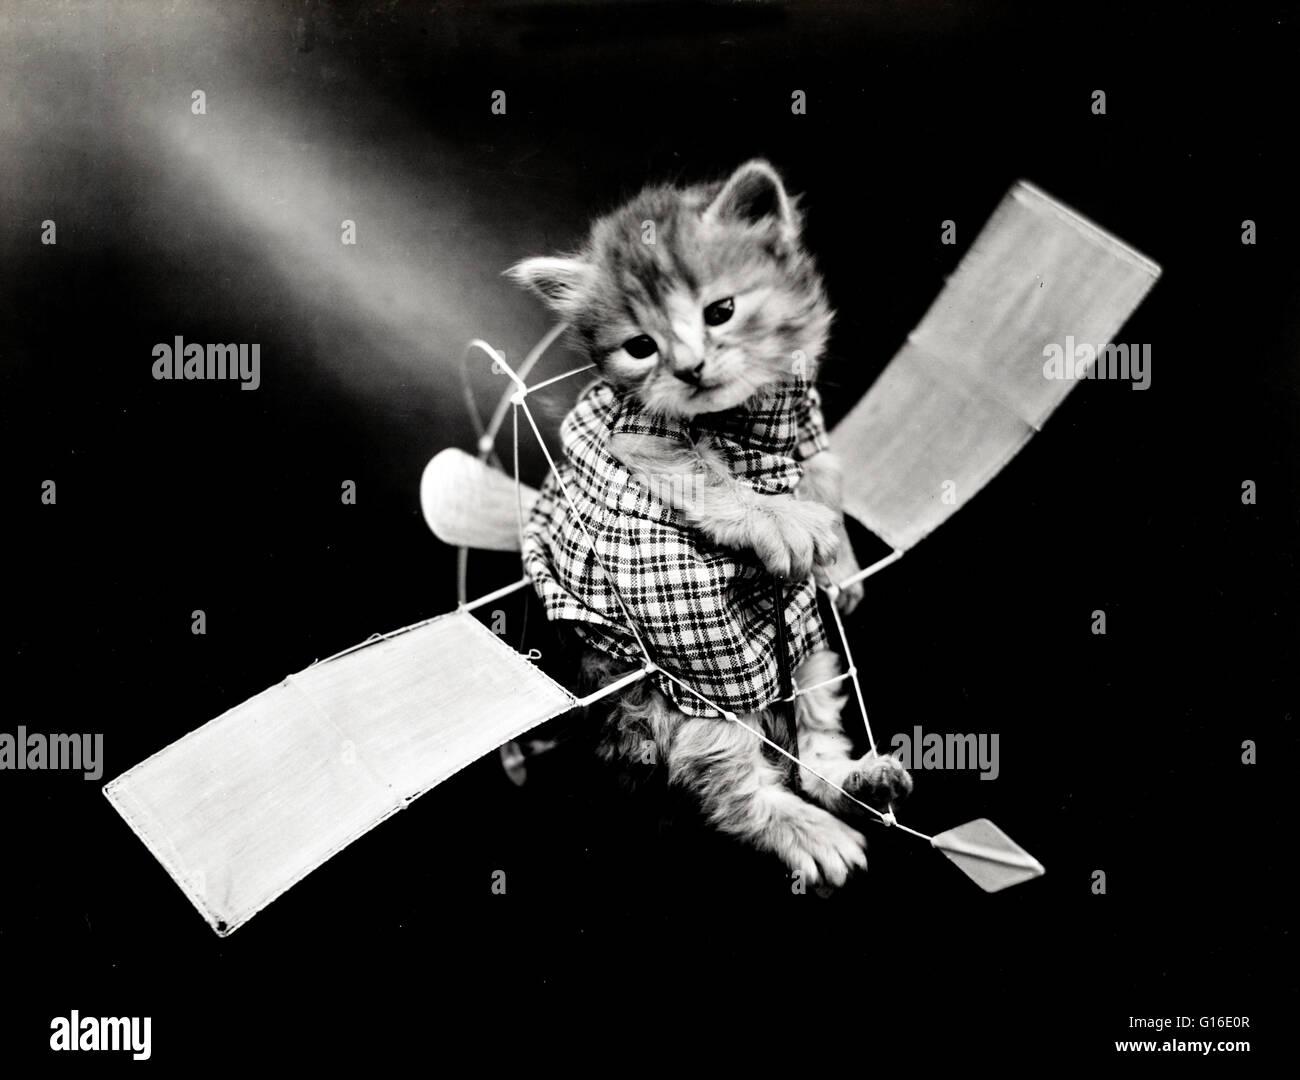 Unter dem Titel: "Die Flieger" zeigt eine Kätzchen trägt ein Kleid in einem Spielzeug-Segelflugzeug platziert. Harry Whittier befreit (1879-1953) war ein US-amerikanischer Fotograf, der lebende Tiere gekleidet und posierte in menschlichen Situationen mit Requisiten fotografiert. Seine Tierfotos wurden featu Stockfoto